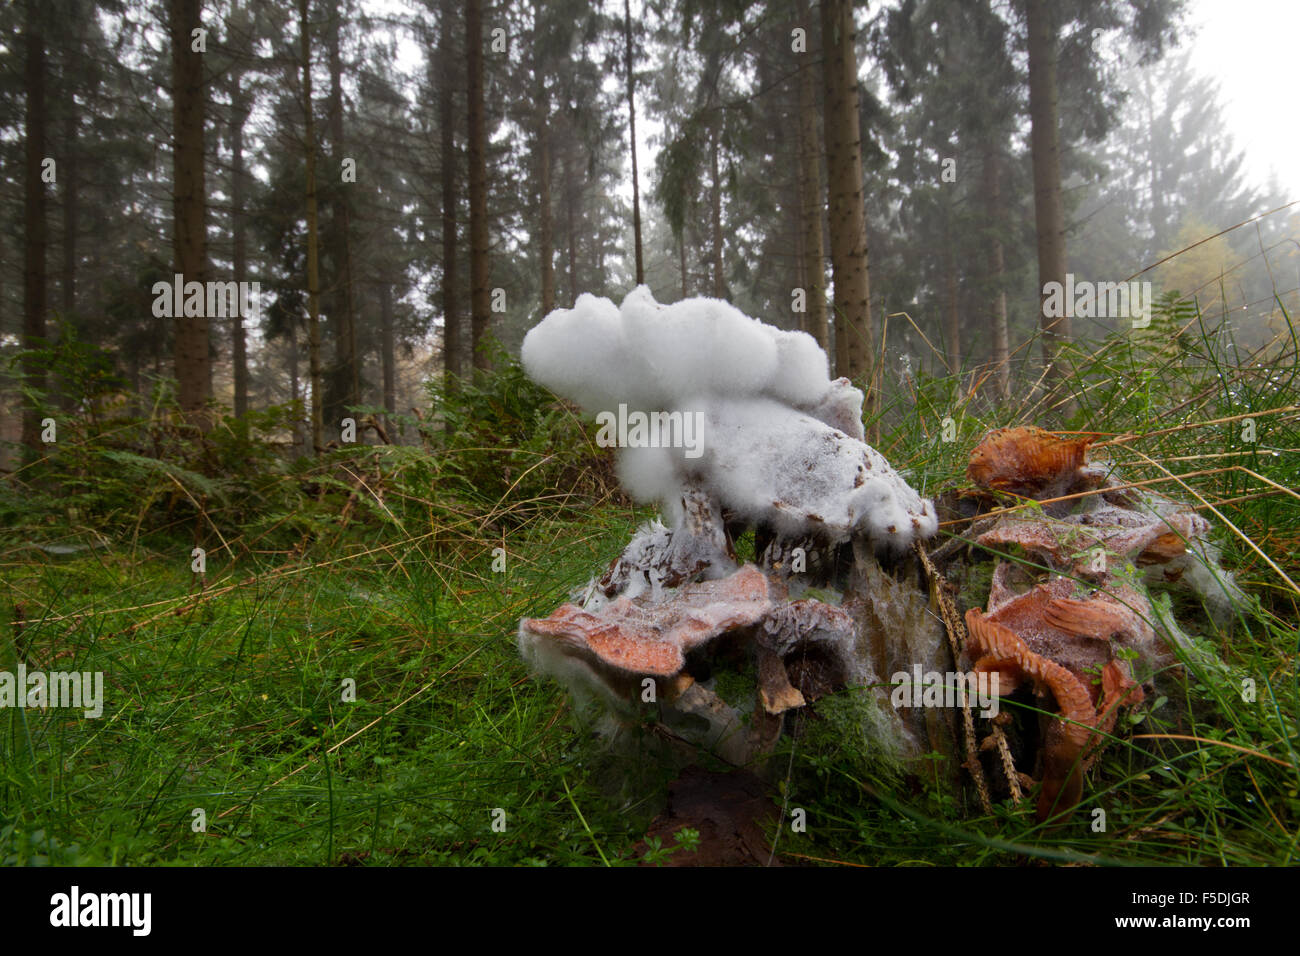 Blanches la moisissure sur un champignon dans une forêt Banque D'Images